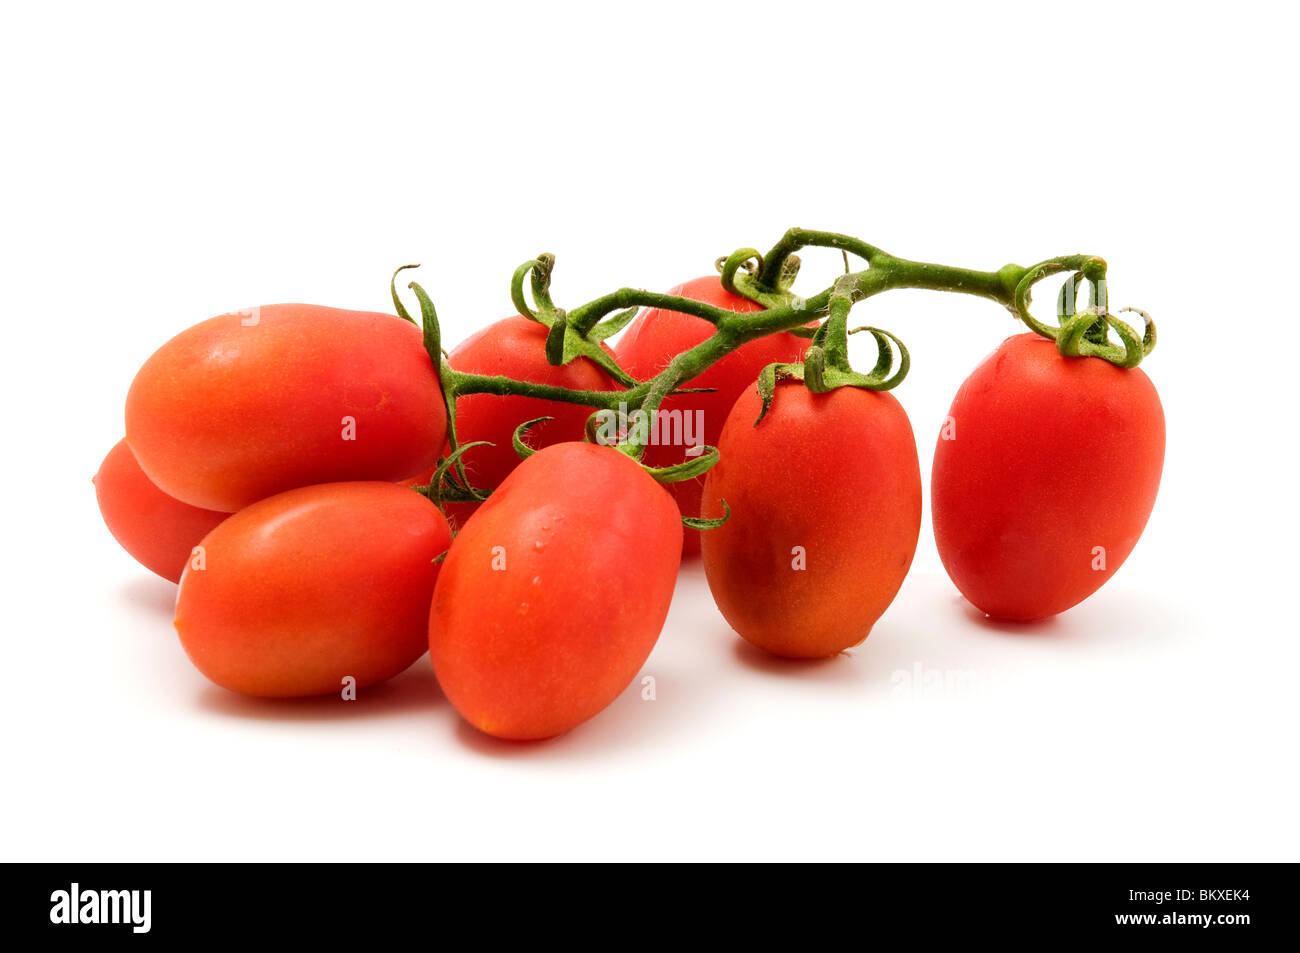 Roma tomato on a white background Stock Photo